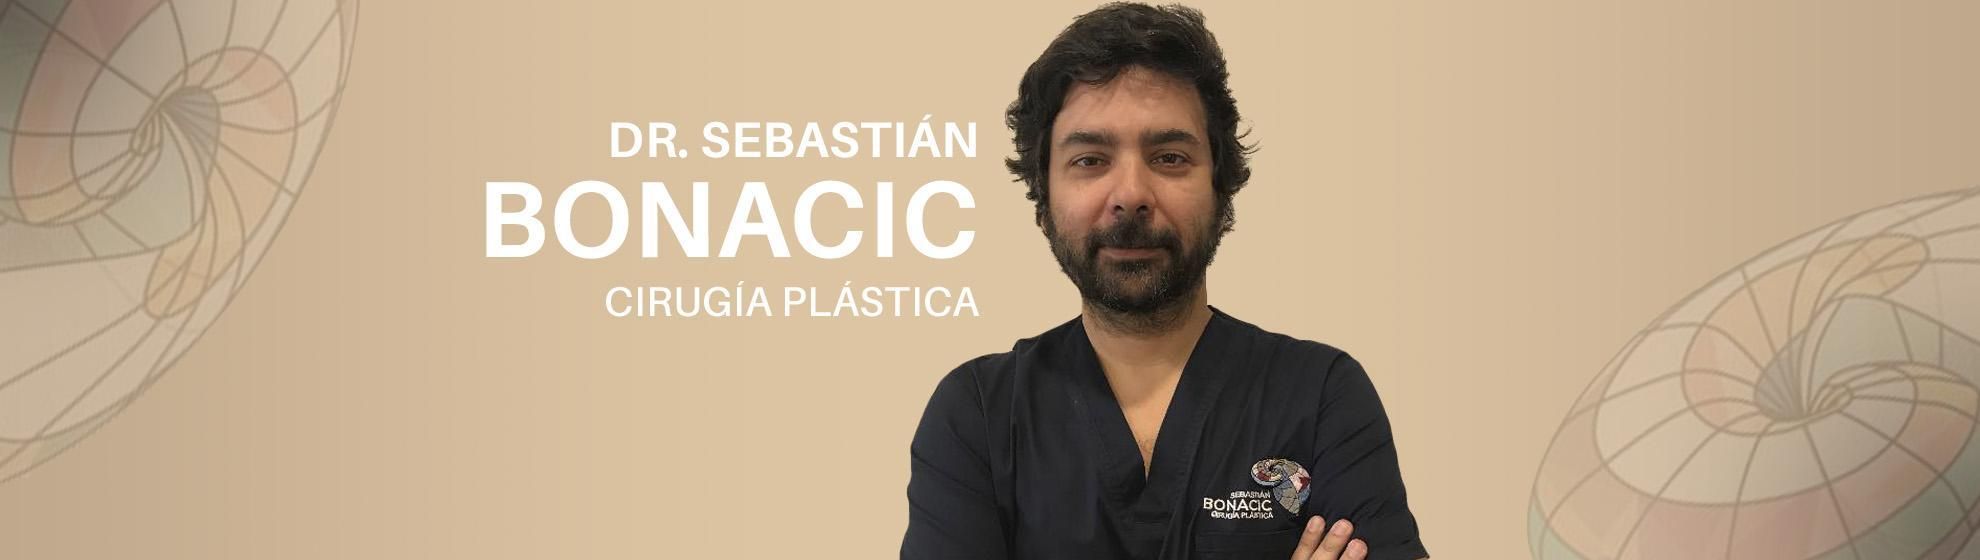 Dr. Sebastián Bonacic